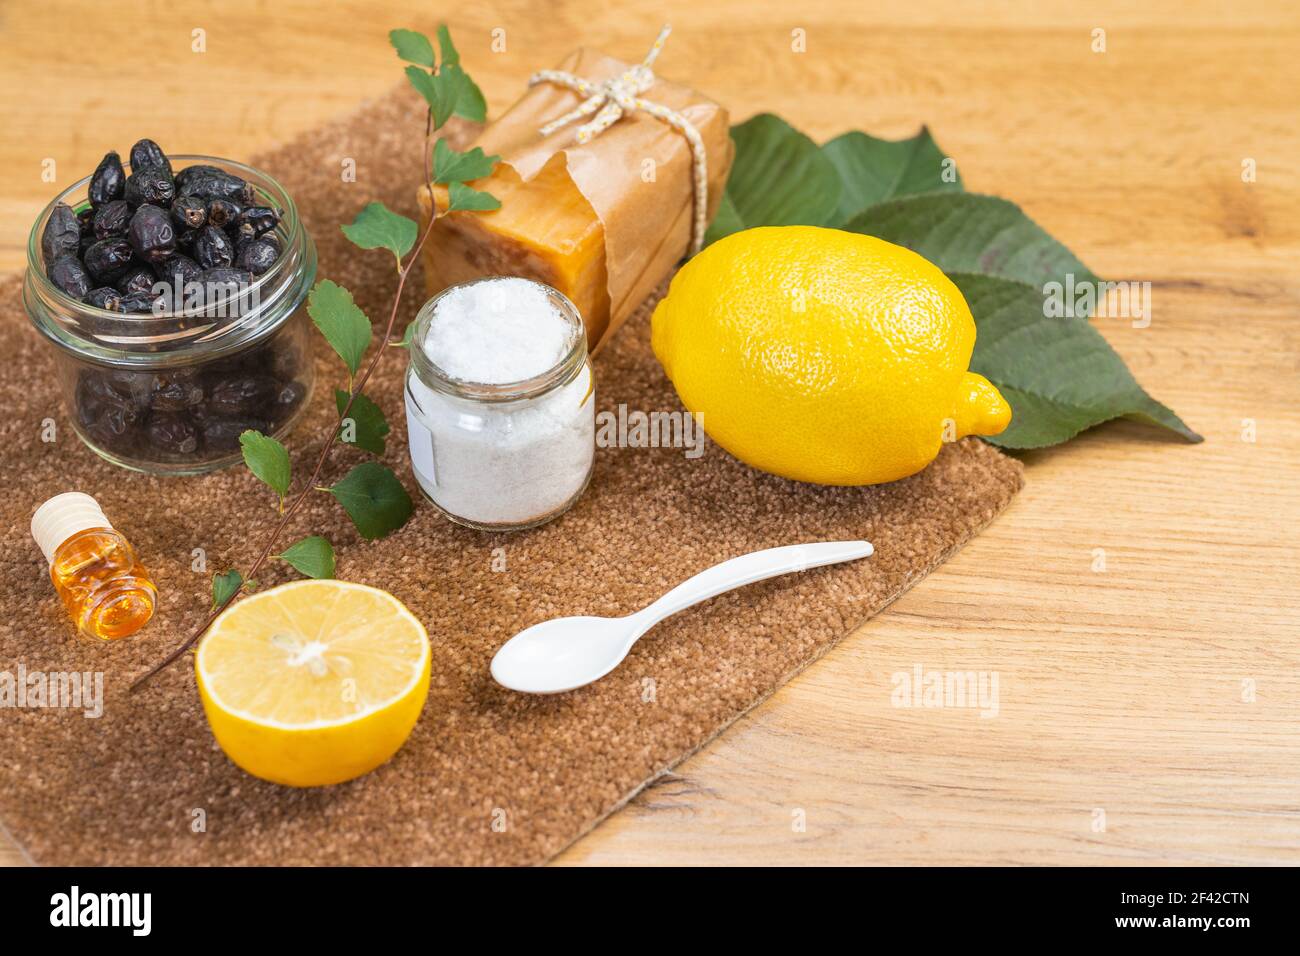 Ökologische natürliche Reinigungsmittel auf einem Holztisch. Natürliche Seife, Zitrone, Öl, Salz und getrocknete Beeren. Hausmittel Reinigungskonzept. Stockfoto